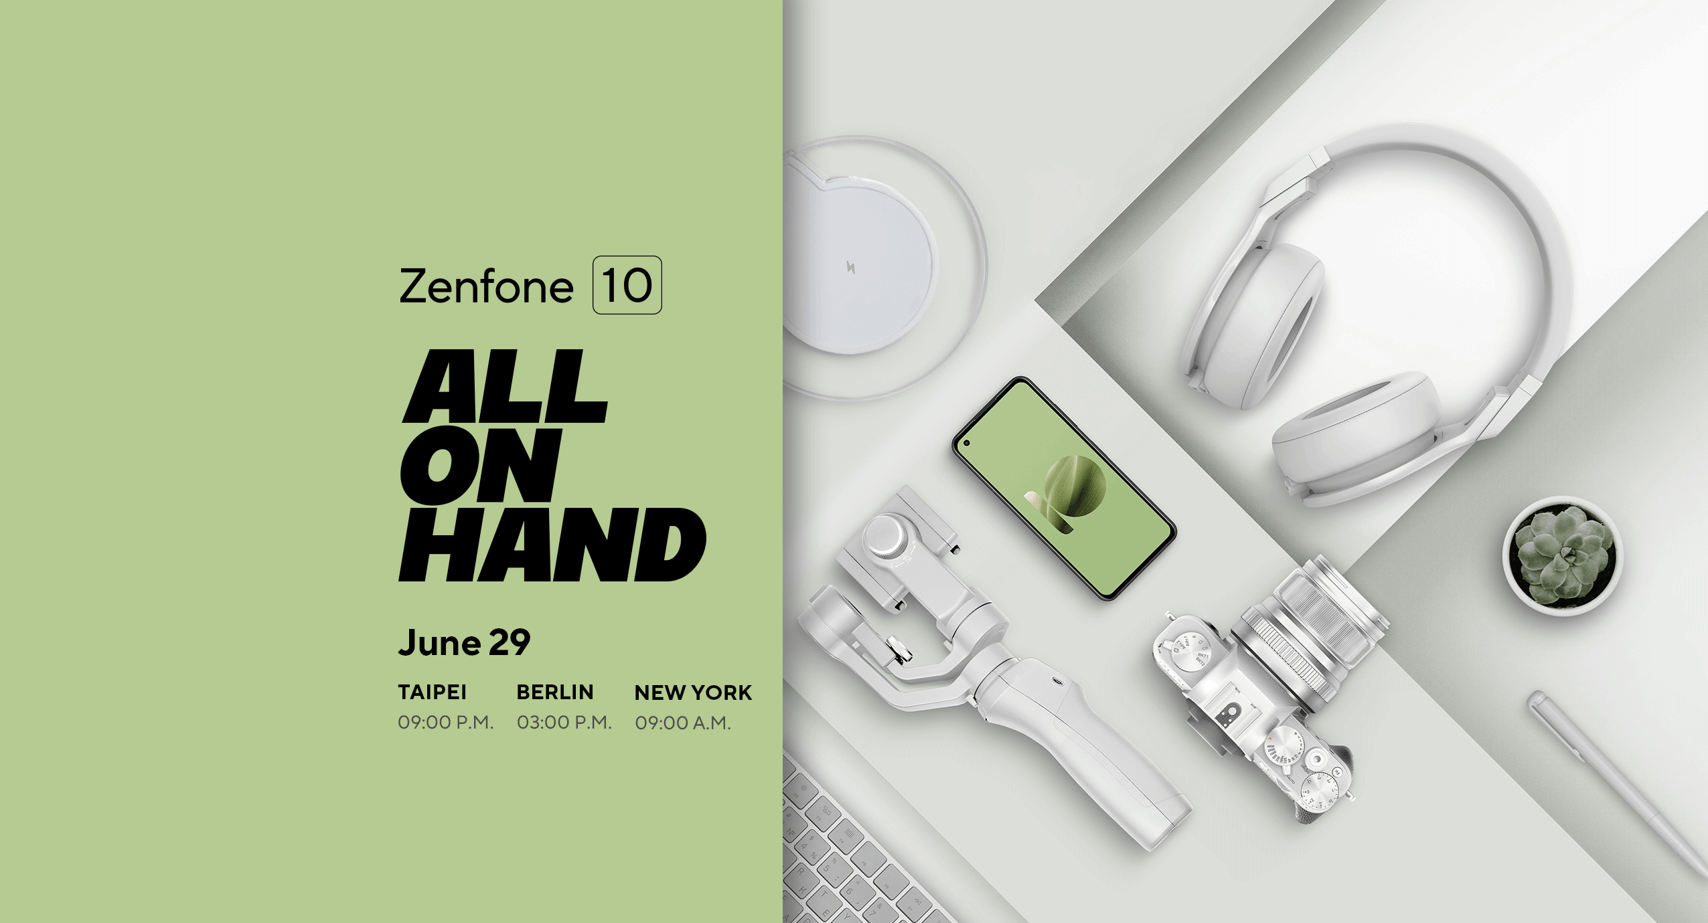 Asus Zenfone 10: What's new? 